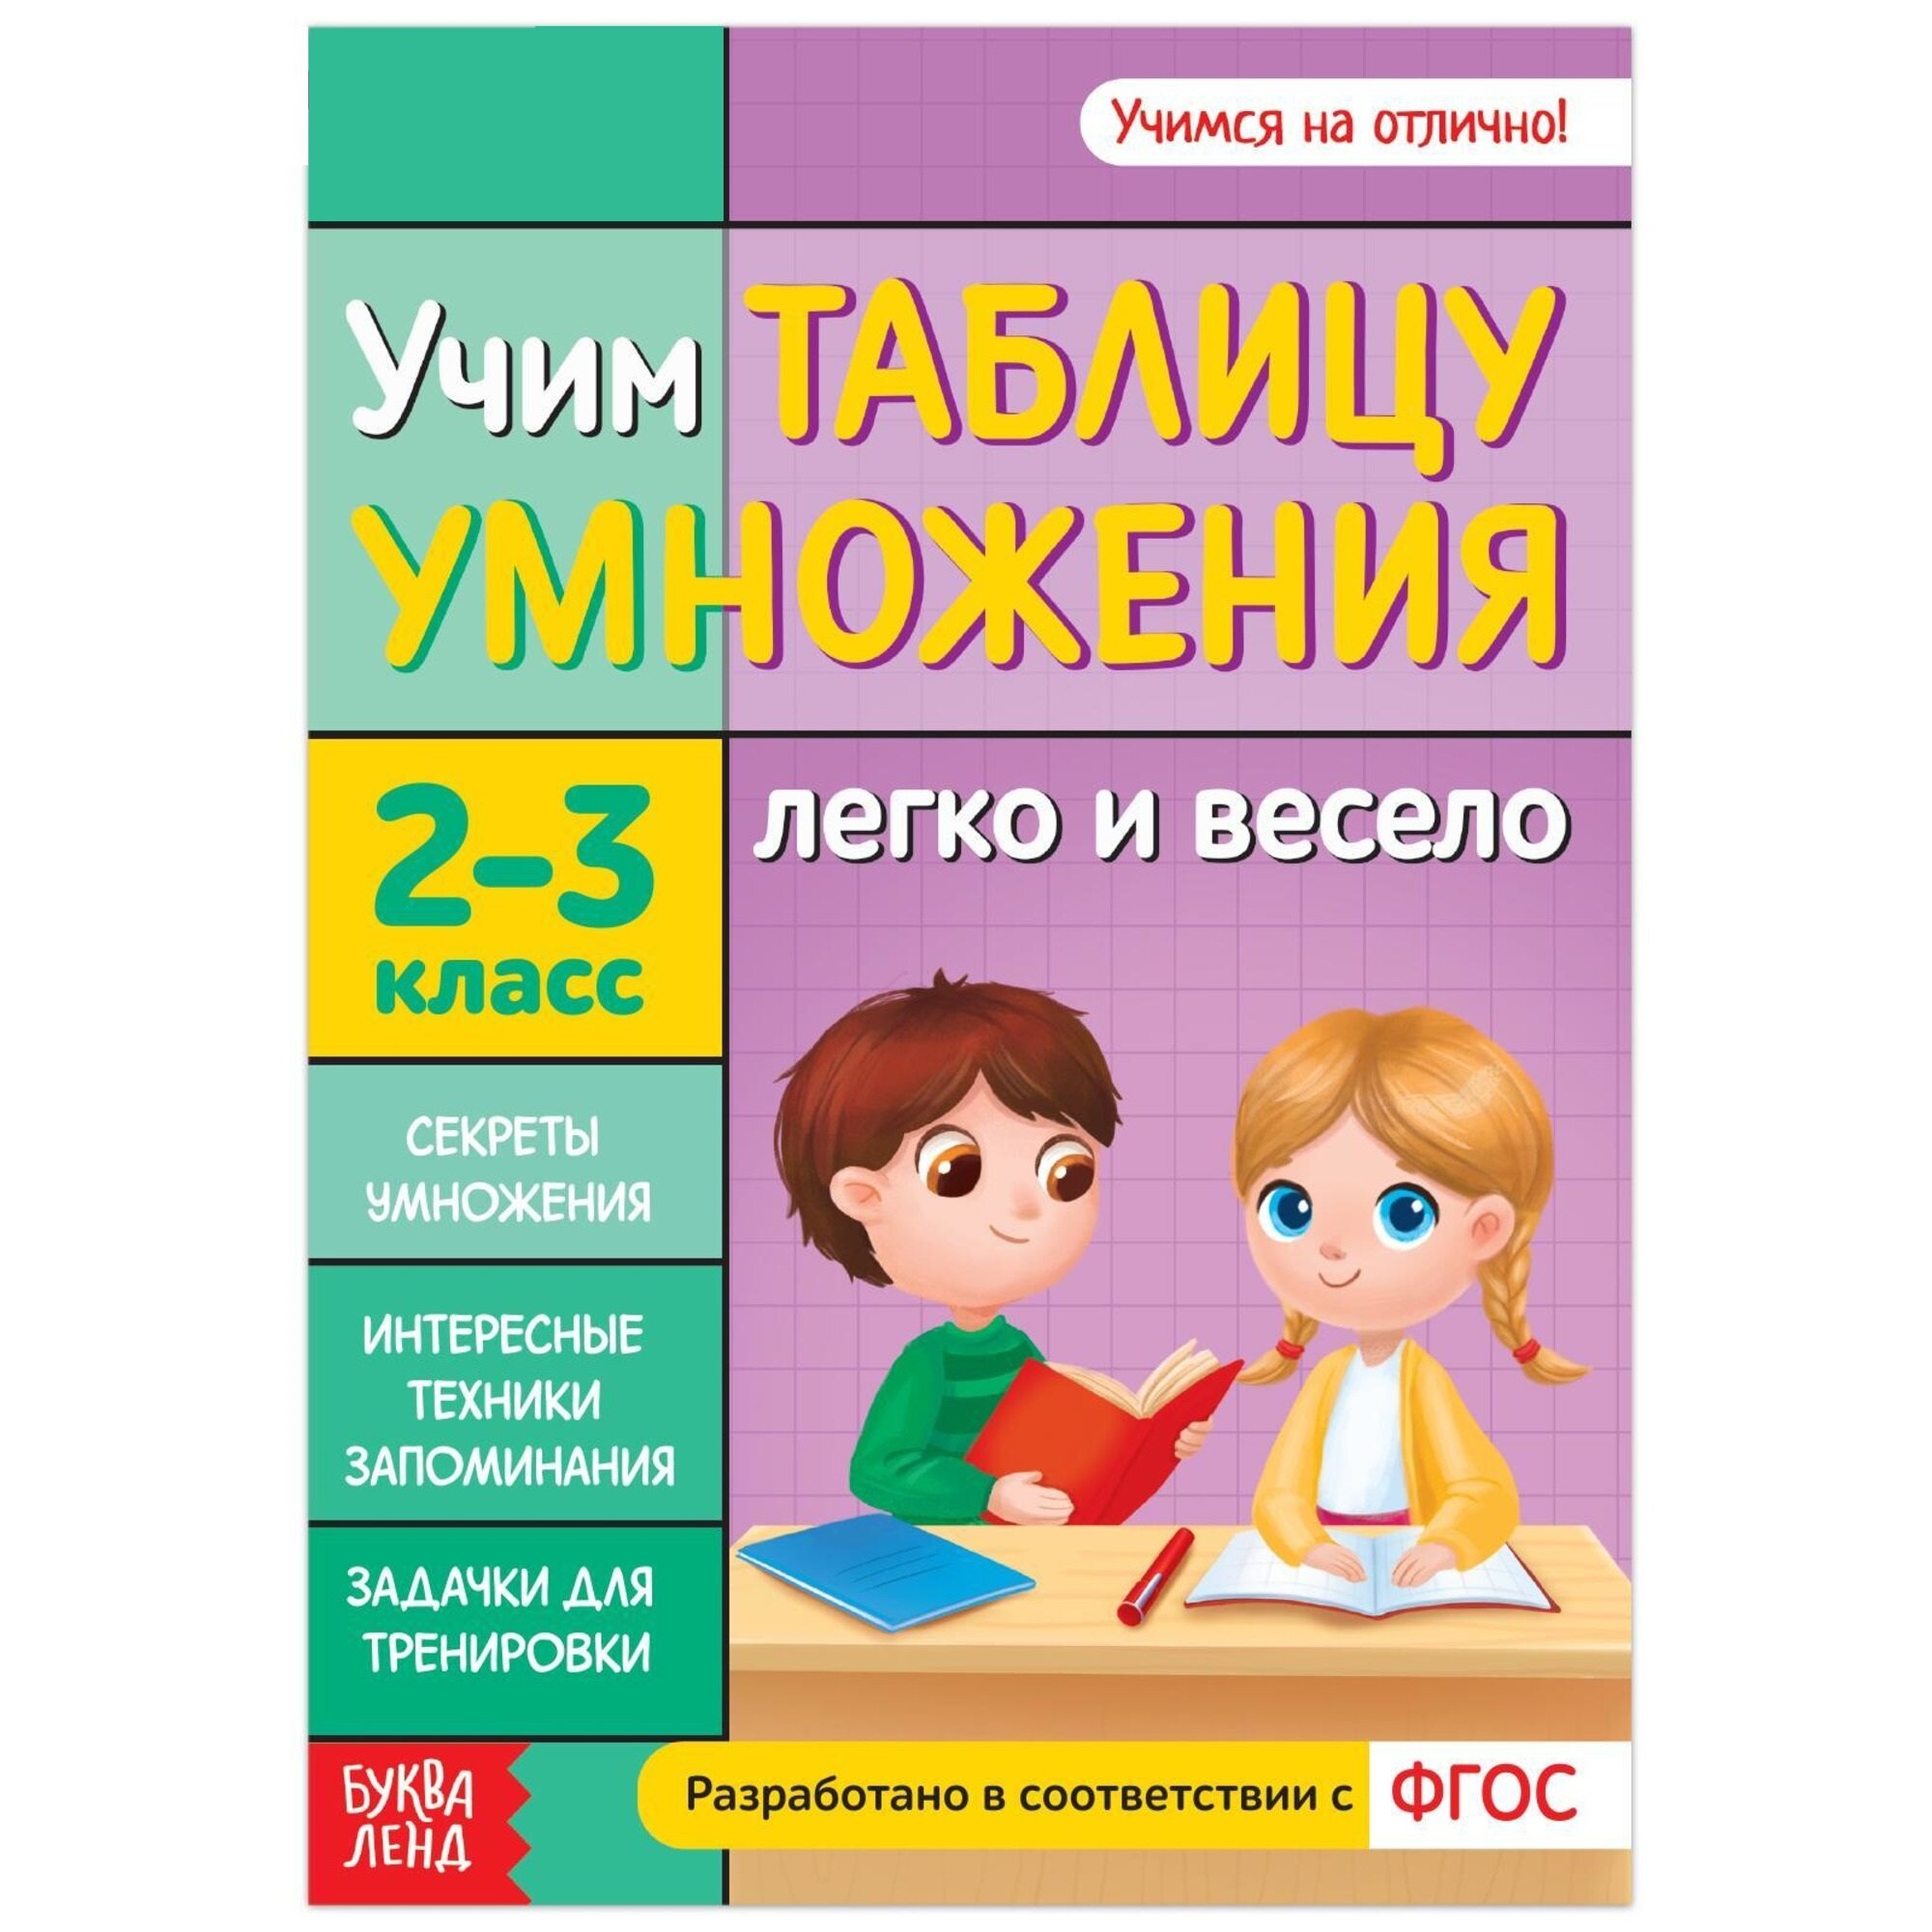 Книга обучающая "Учим таблицу умножения" 24 стр, 2-3 класс, разработано в соответствии с ФГОС, для детей